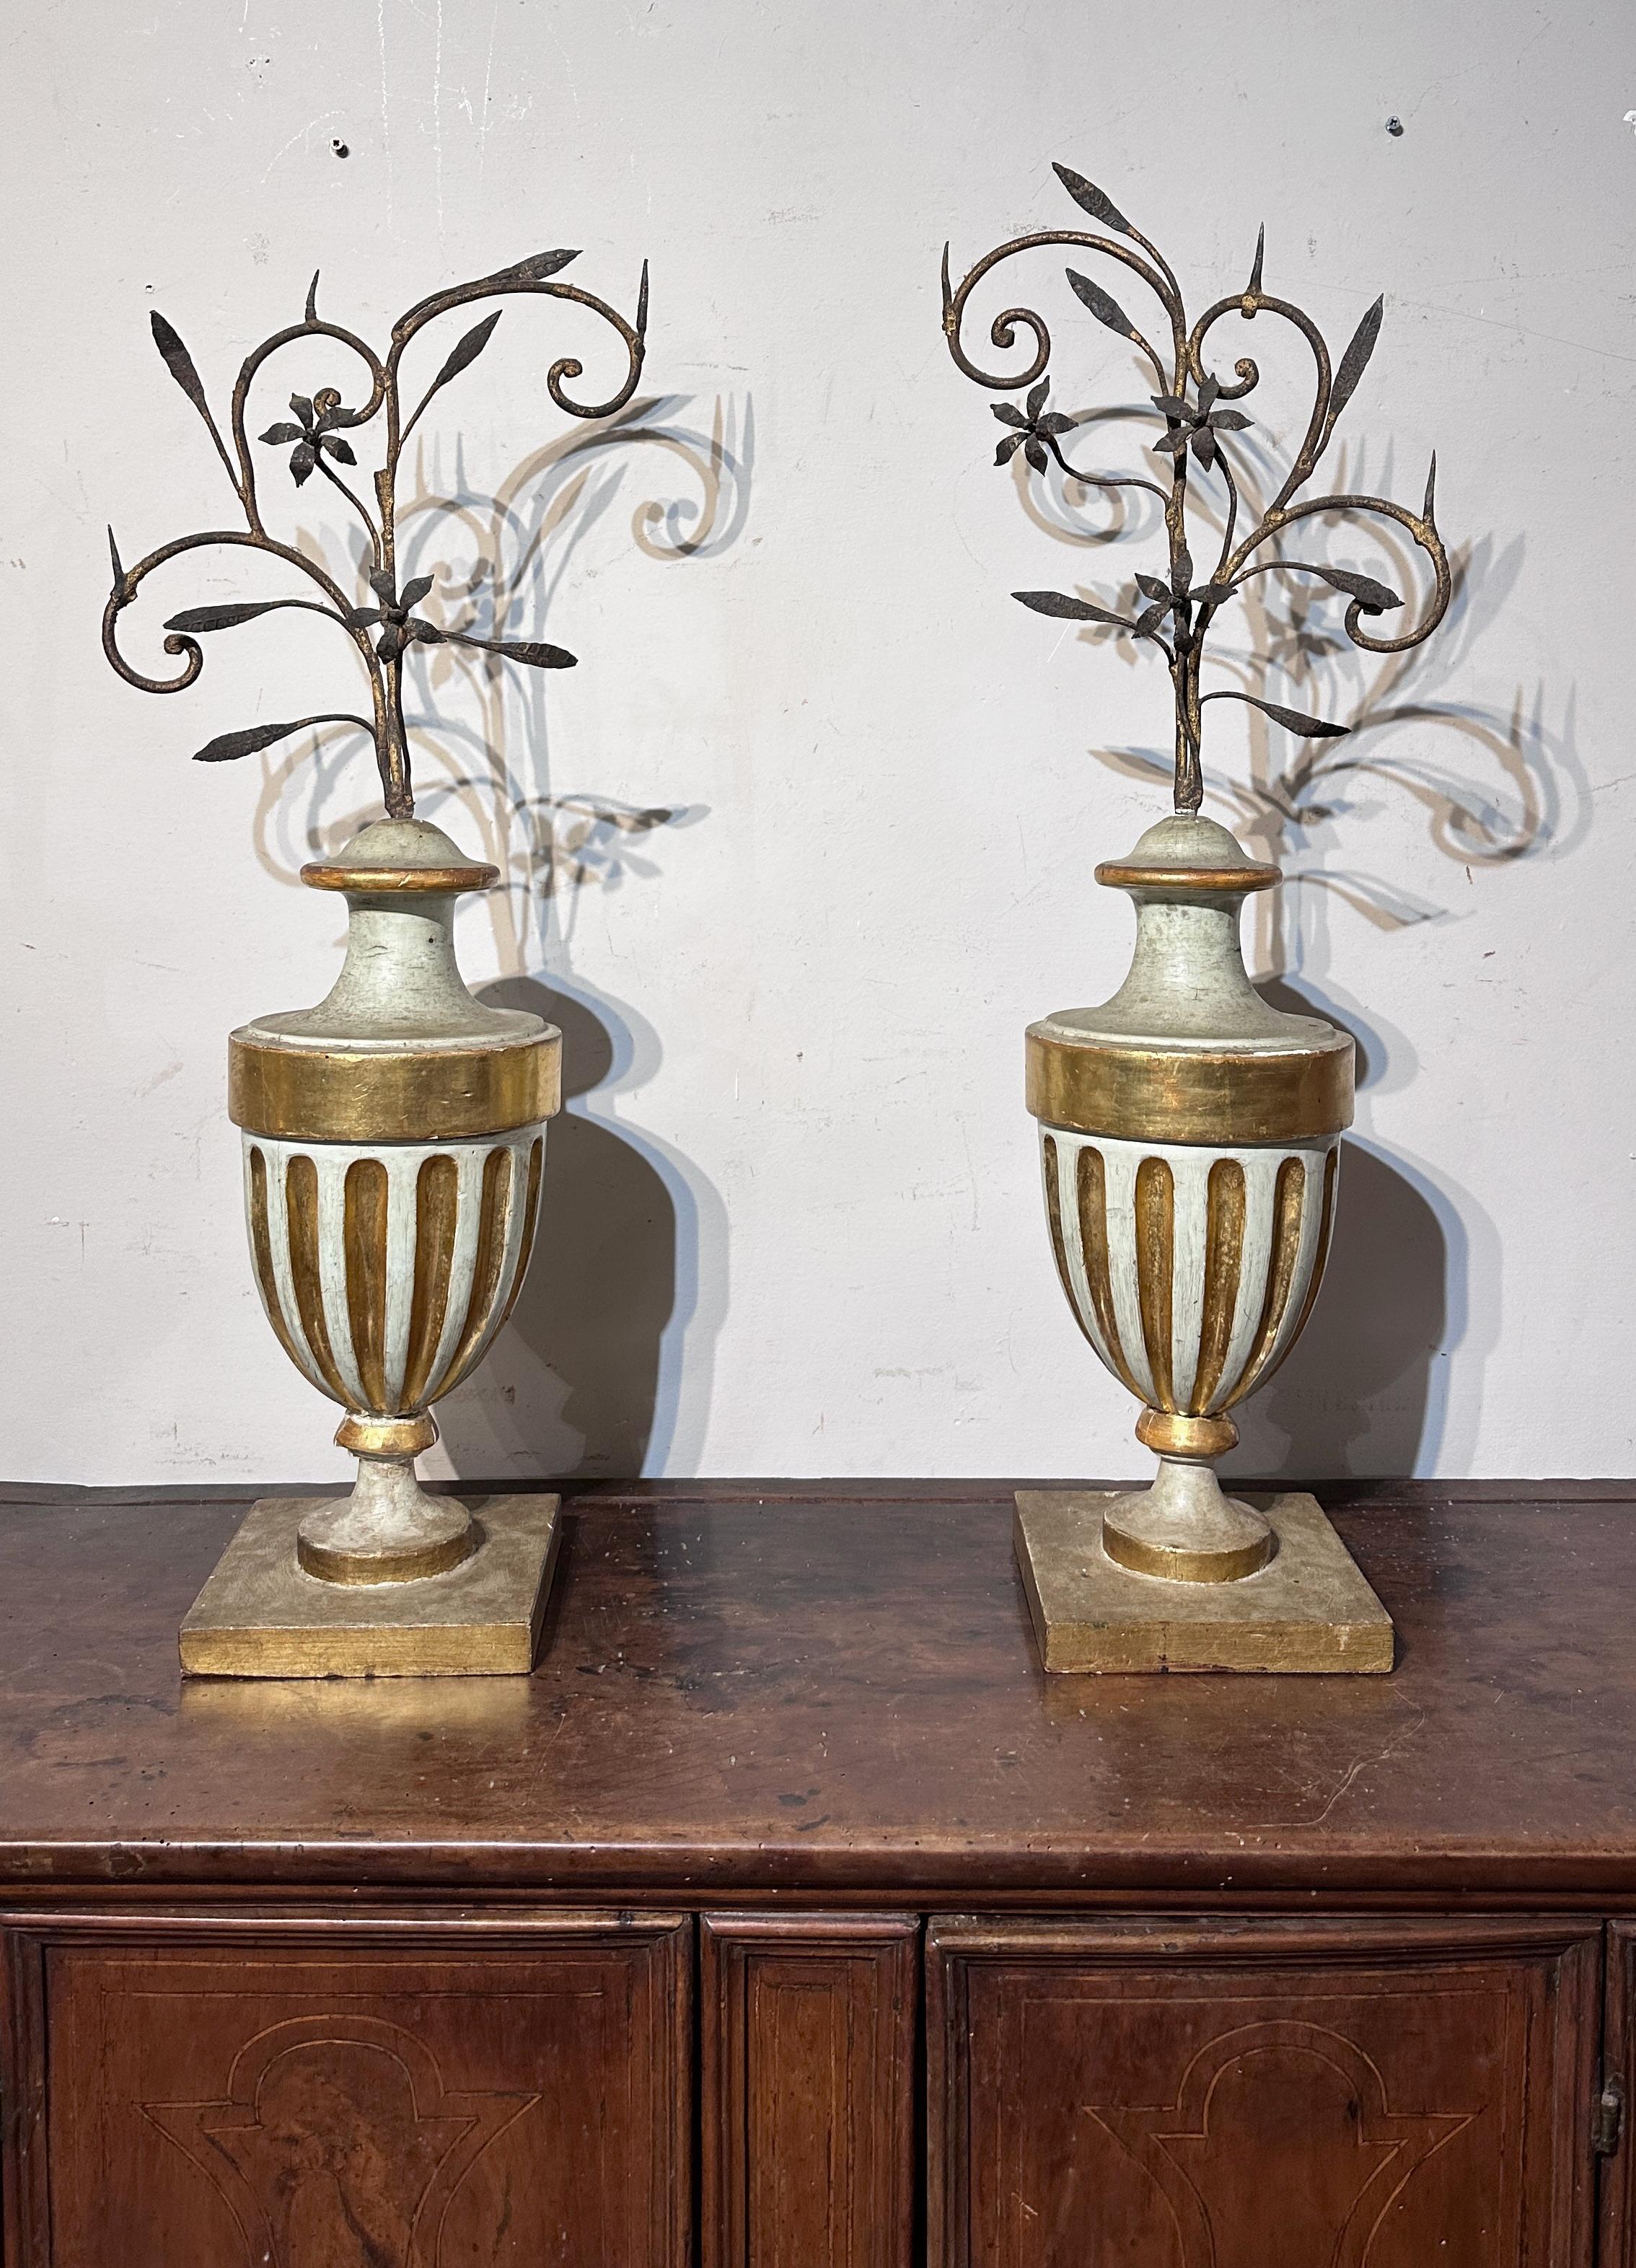 Dieses Paar Vasenpalmenhalter wird einer toskanischen Produktion aus der neoklassizistischen Periode (18. Jahrhundert) zugeschrieben. Sie sind aus geschnitztem Holz gefertigt und mit einer mageren Temperafarbe bemalt, die dem Objekt ein schlichtes